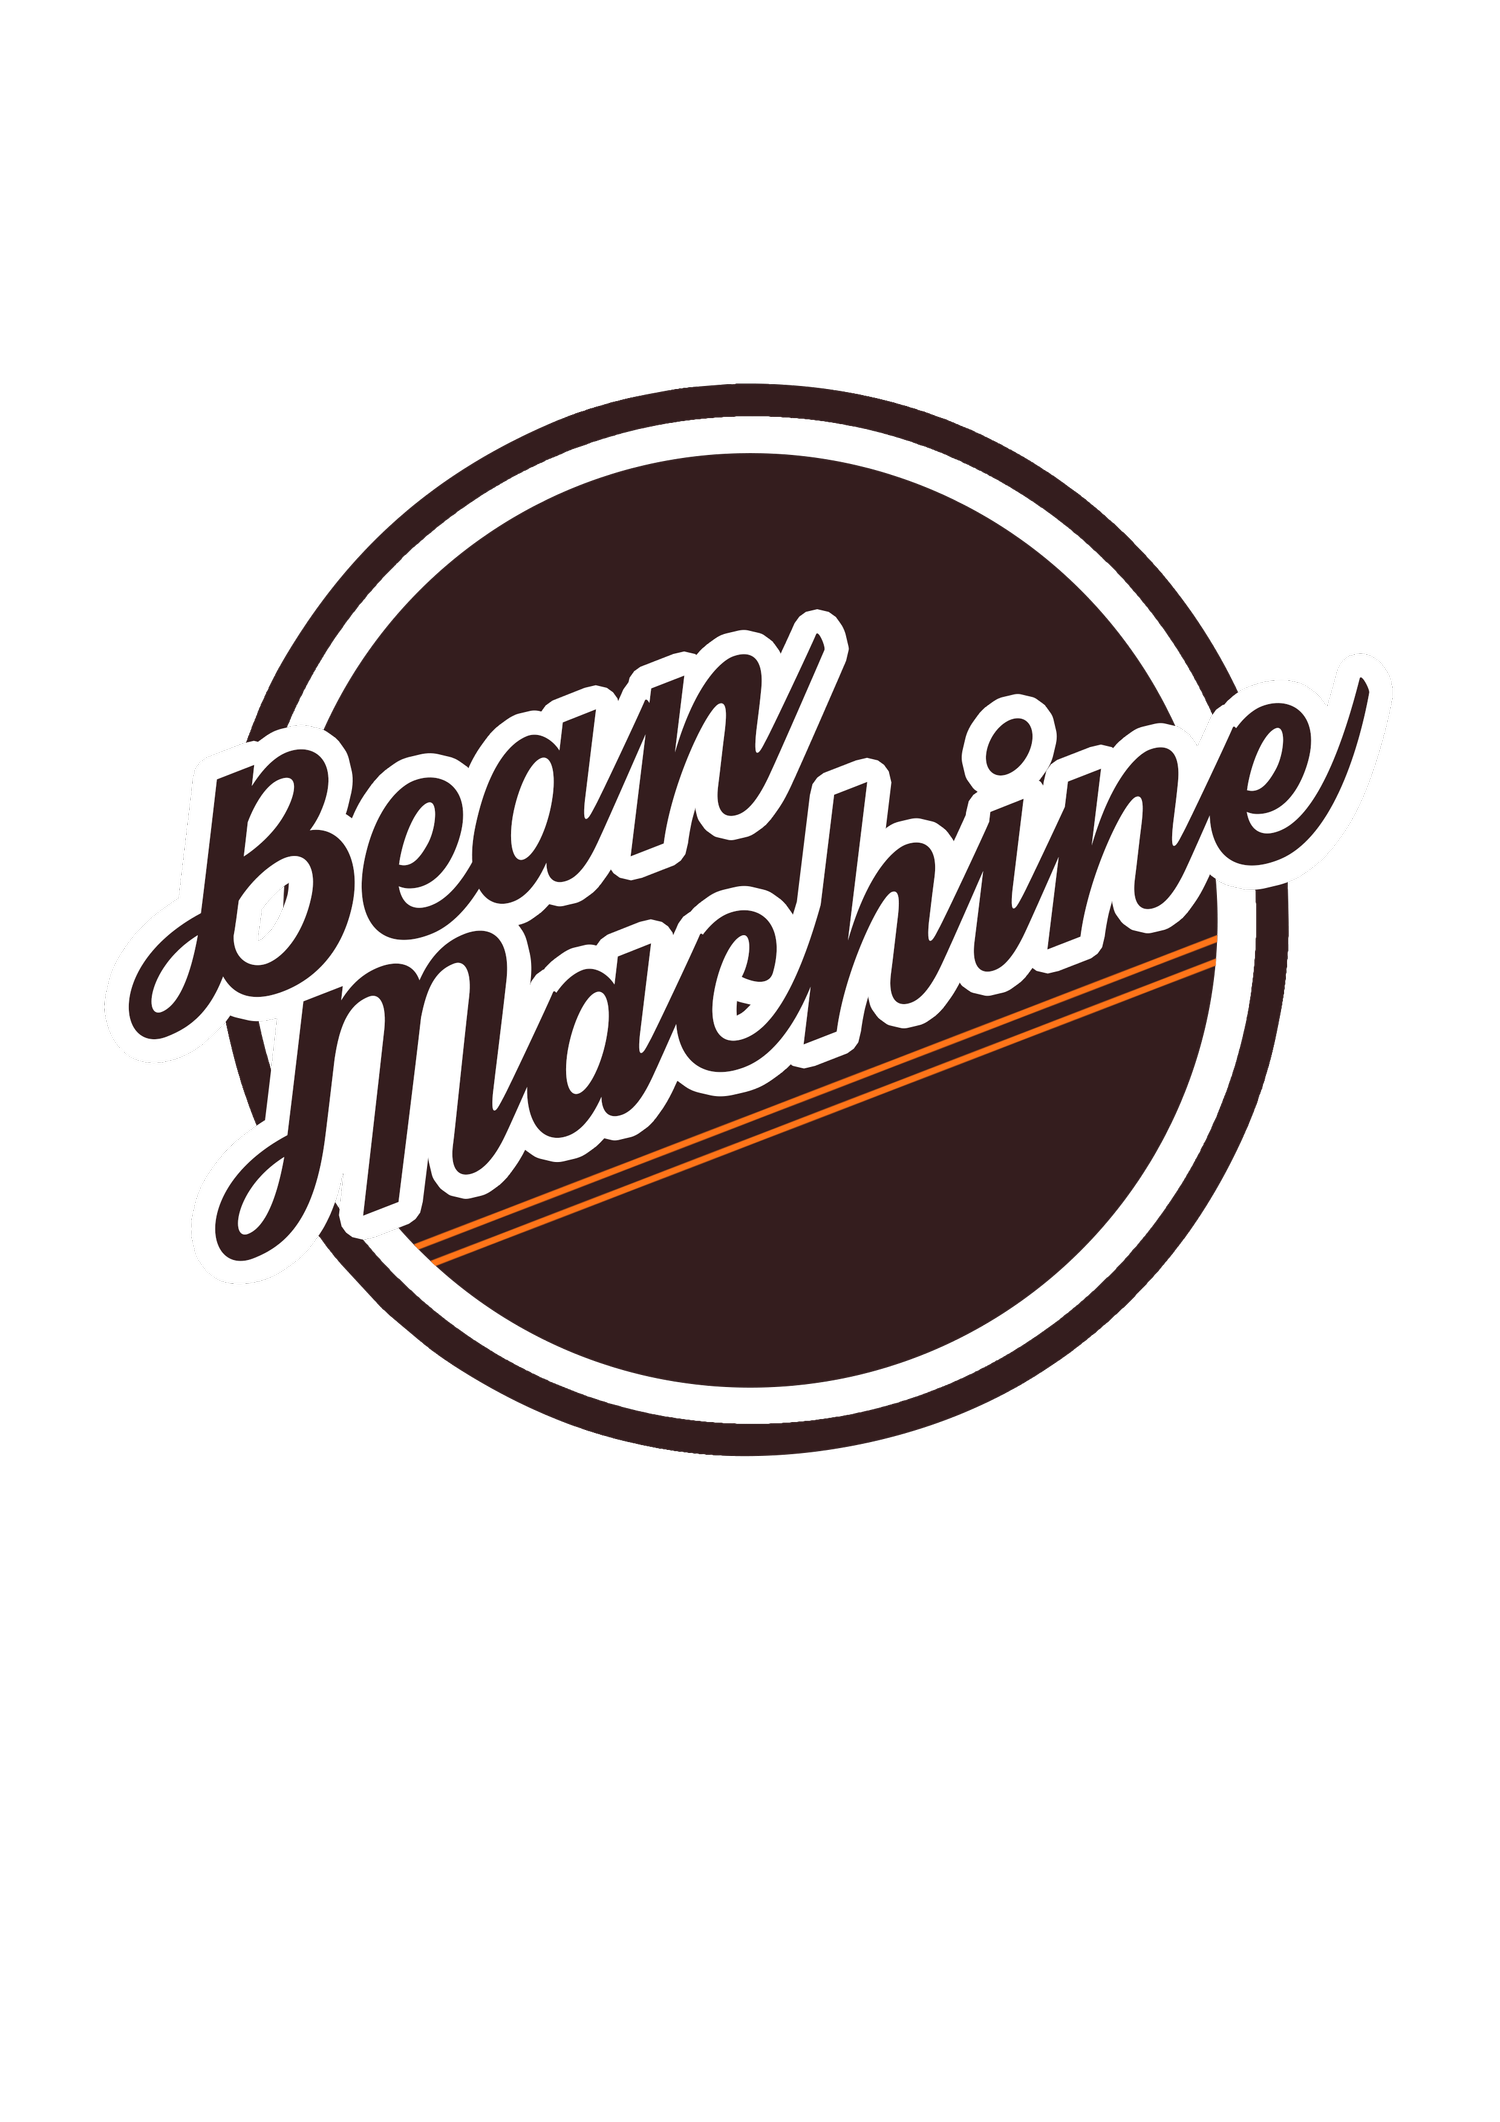 BEAN MACHINE